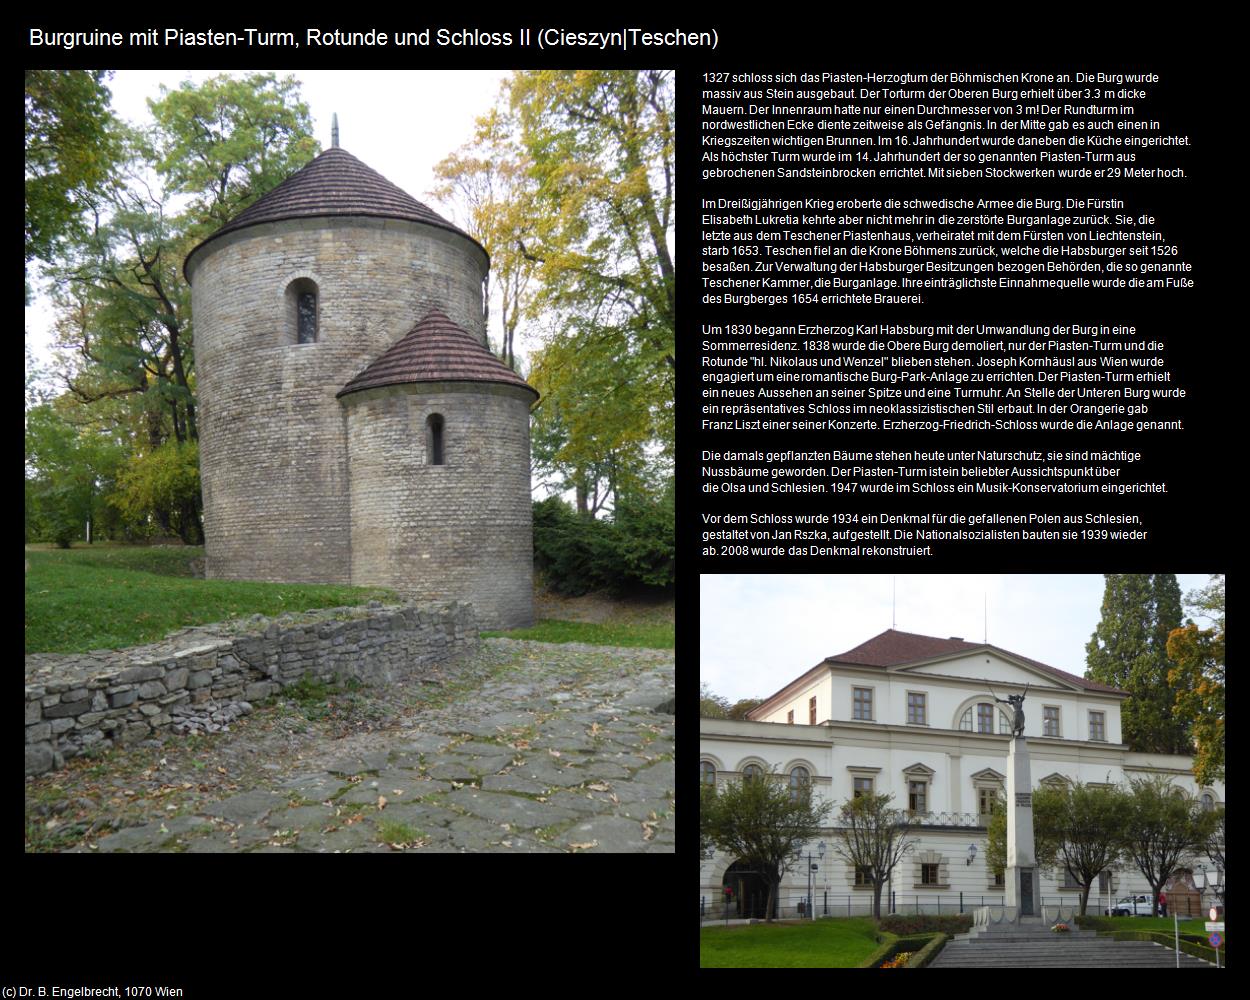 Burgruine mit Piasten-Turm, Rotunde und Schloss II (Cieszyn|Teschen) in POLEN-Schlesien